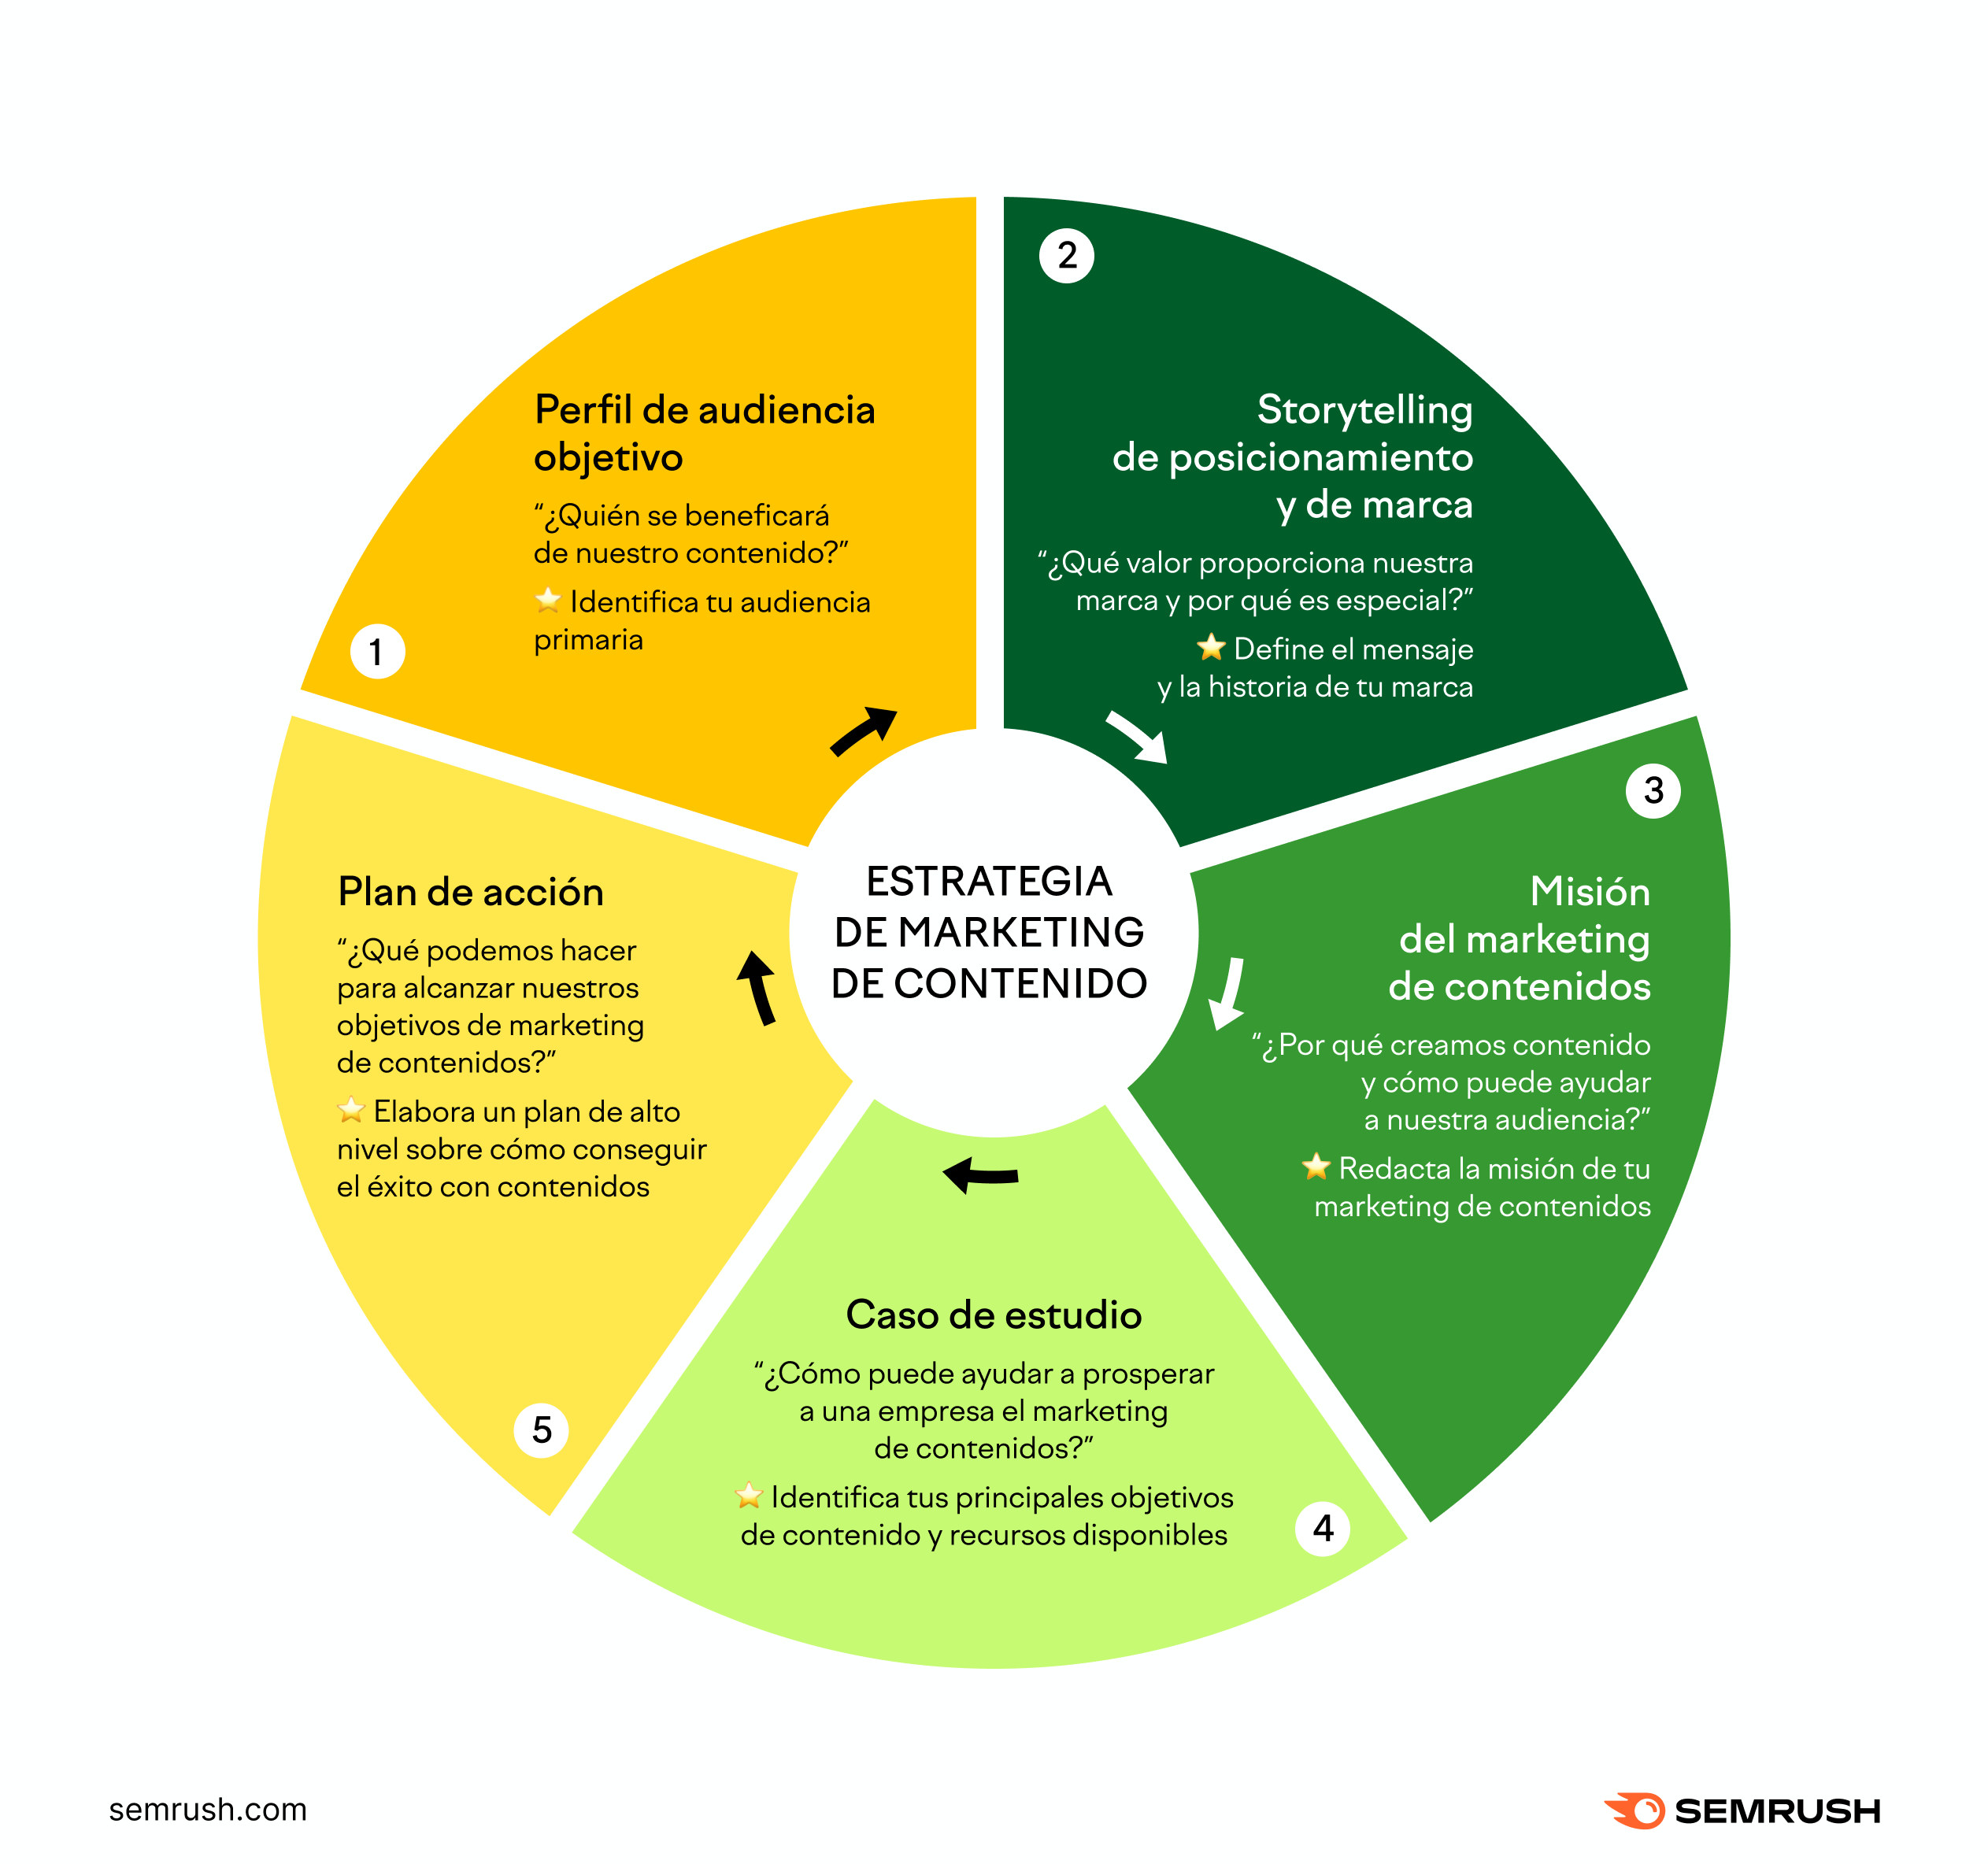 Estrategia de marketing de contenido #infografia #infographic #marketing